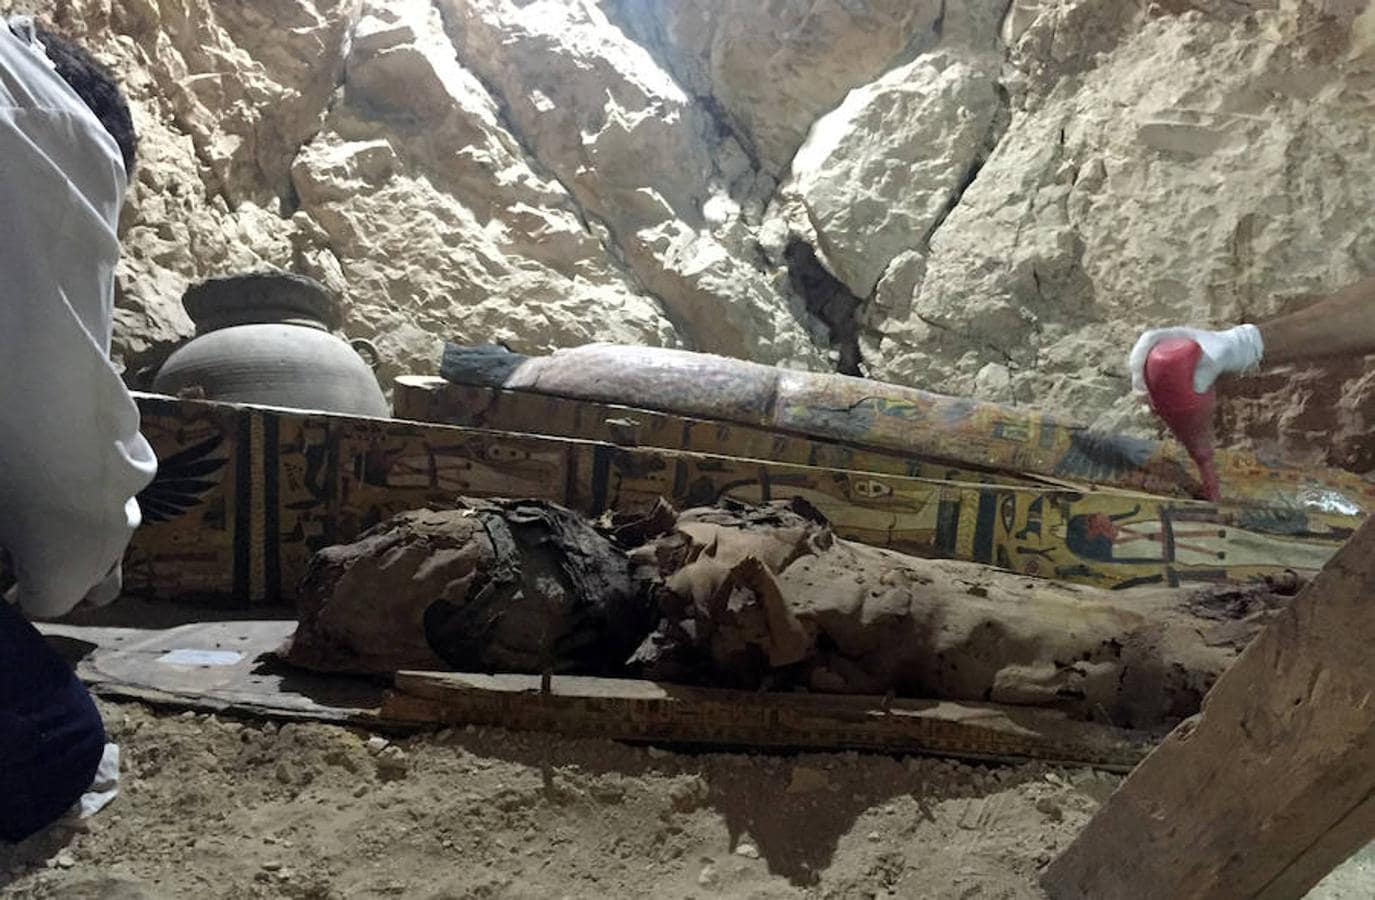 Tras levantar más de 450 metros cúbicos de escombros, el equipo de arqueólogos egipcios encontró la entrada a la tumba principal, flanqueada por otros dos sepulcros adyacentes que todavía no han sido excavados